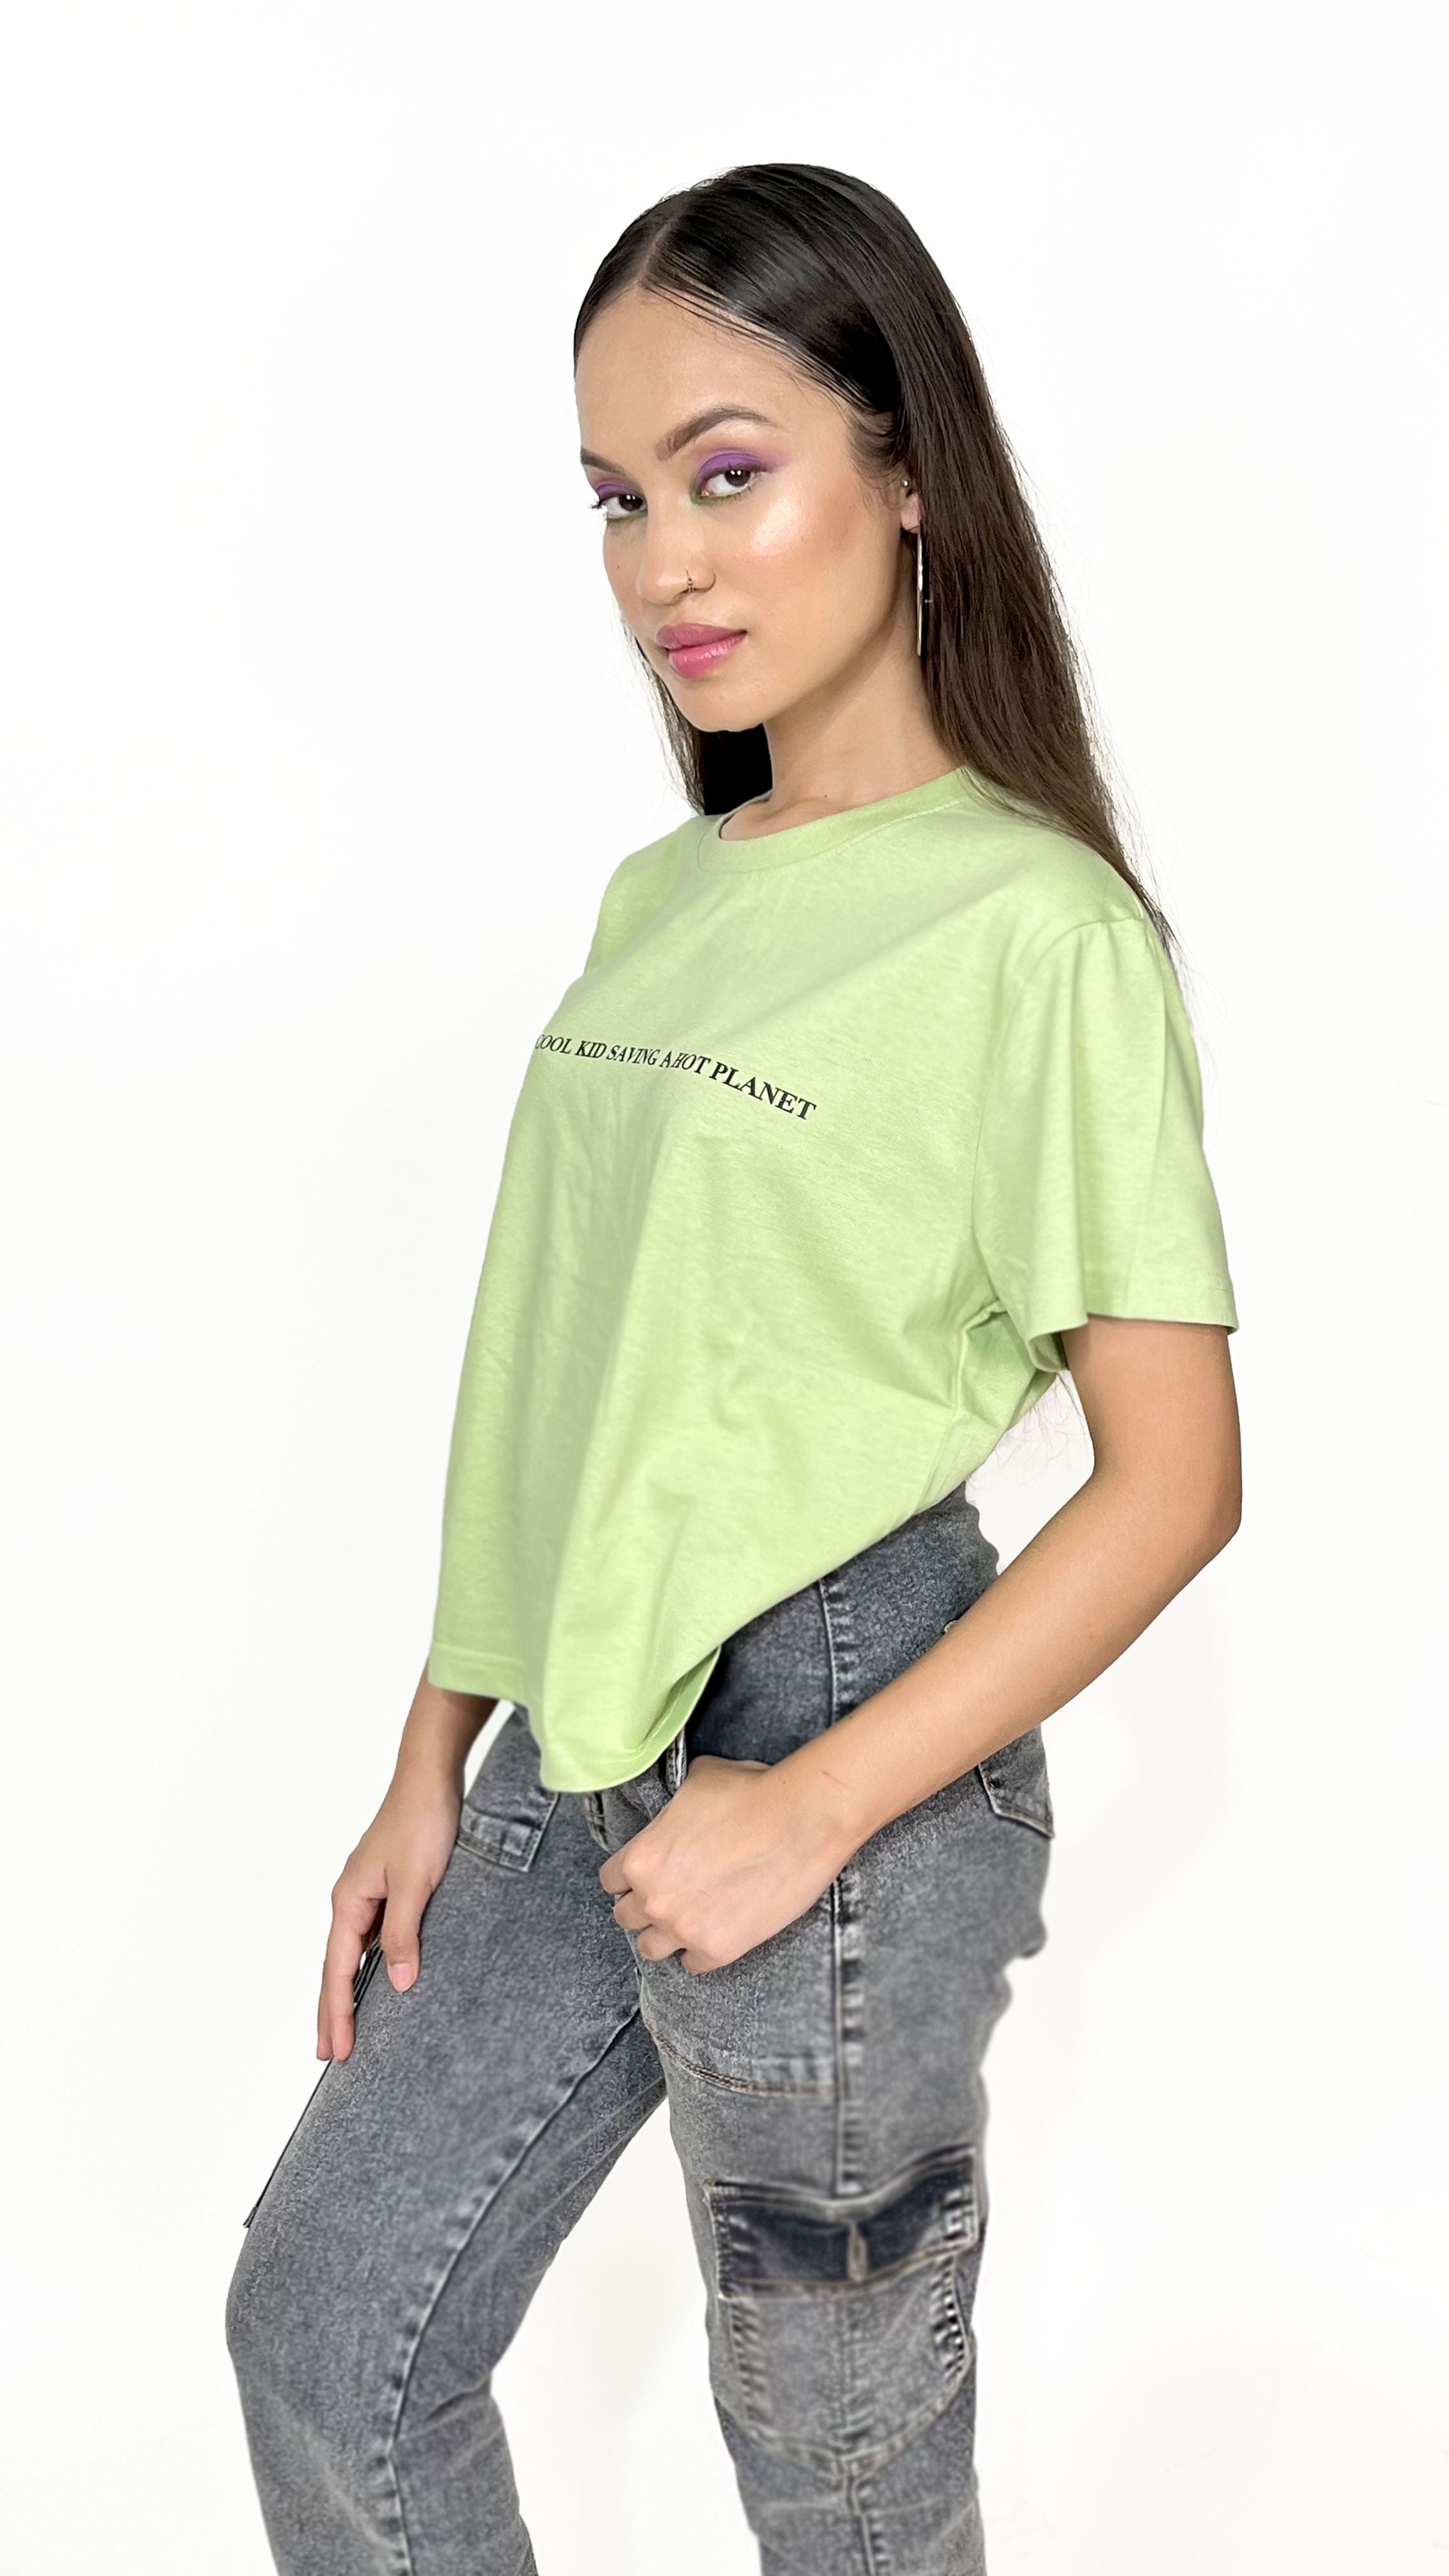 Cool Kid Pastel Green Tee-Slayink-Printed,Printed Tee,Printed Tshirt,Women Tshirt